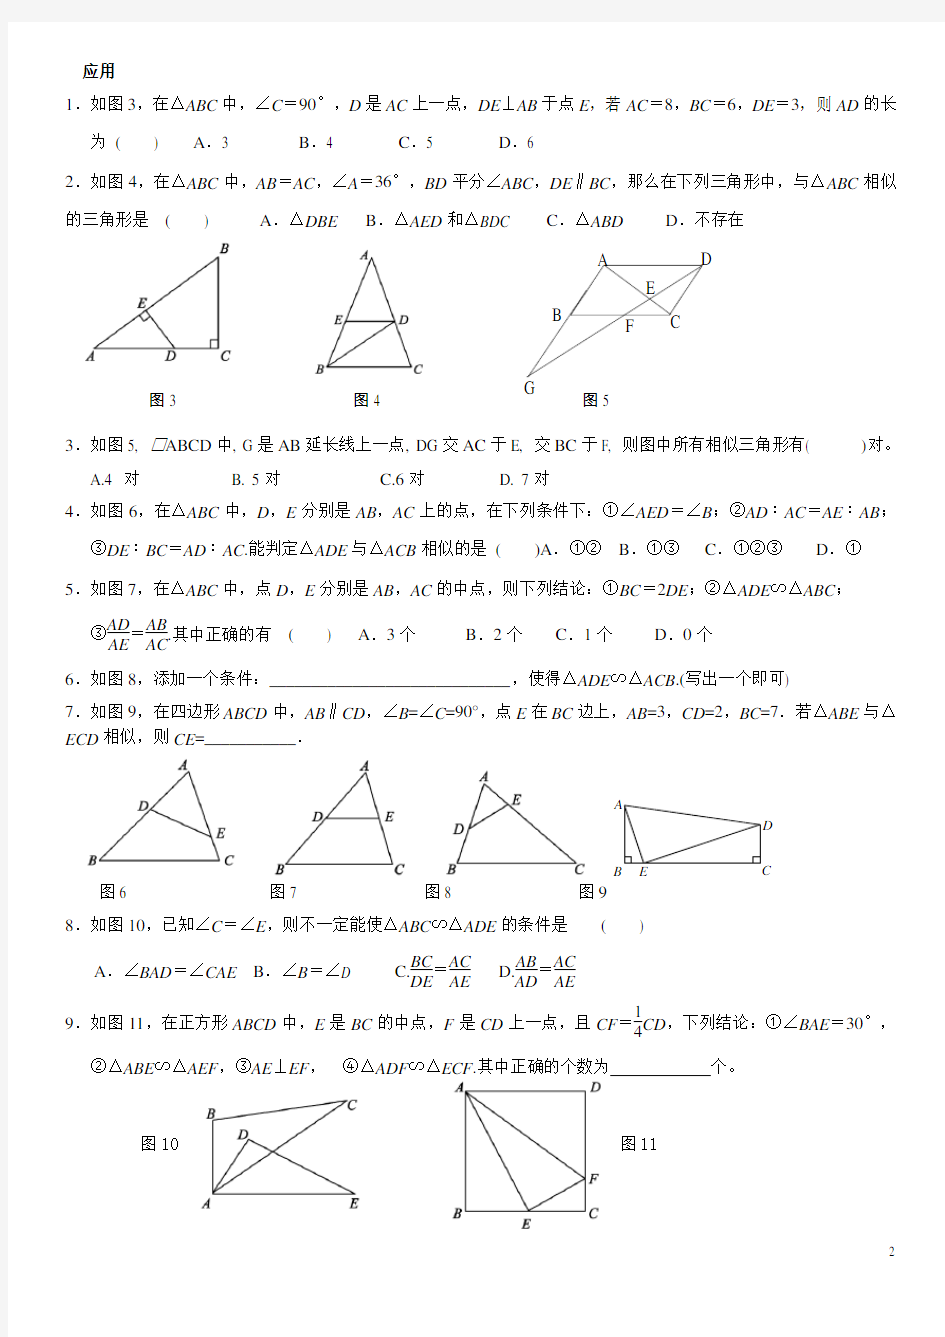 专题：相似三角形的几种基本模型及练习